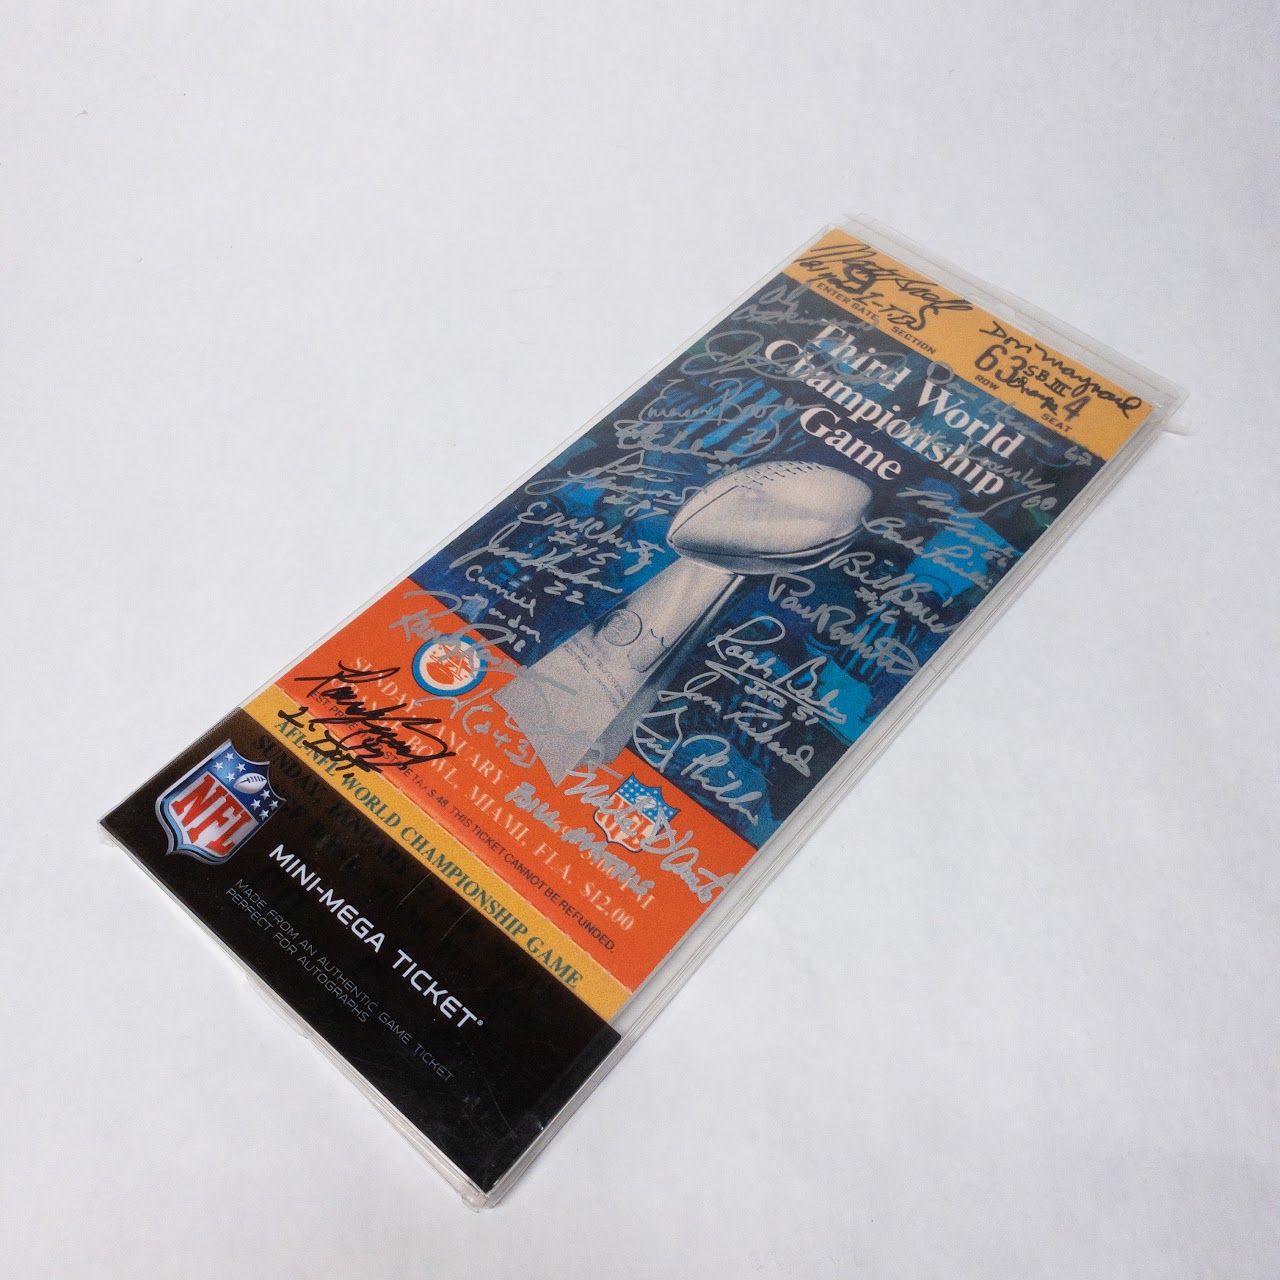 Signed Jets 1969 Super Bowl Mini-Mega Ticket